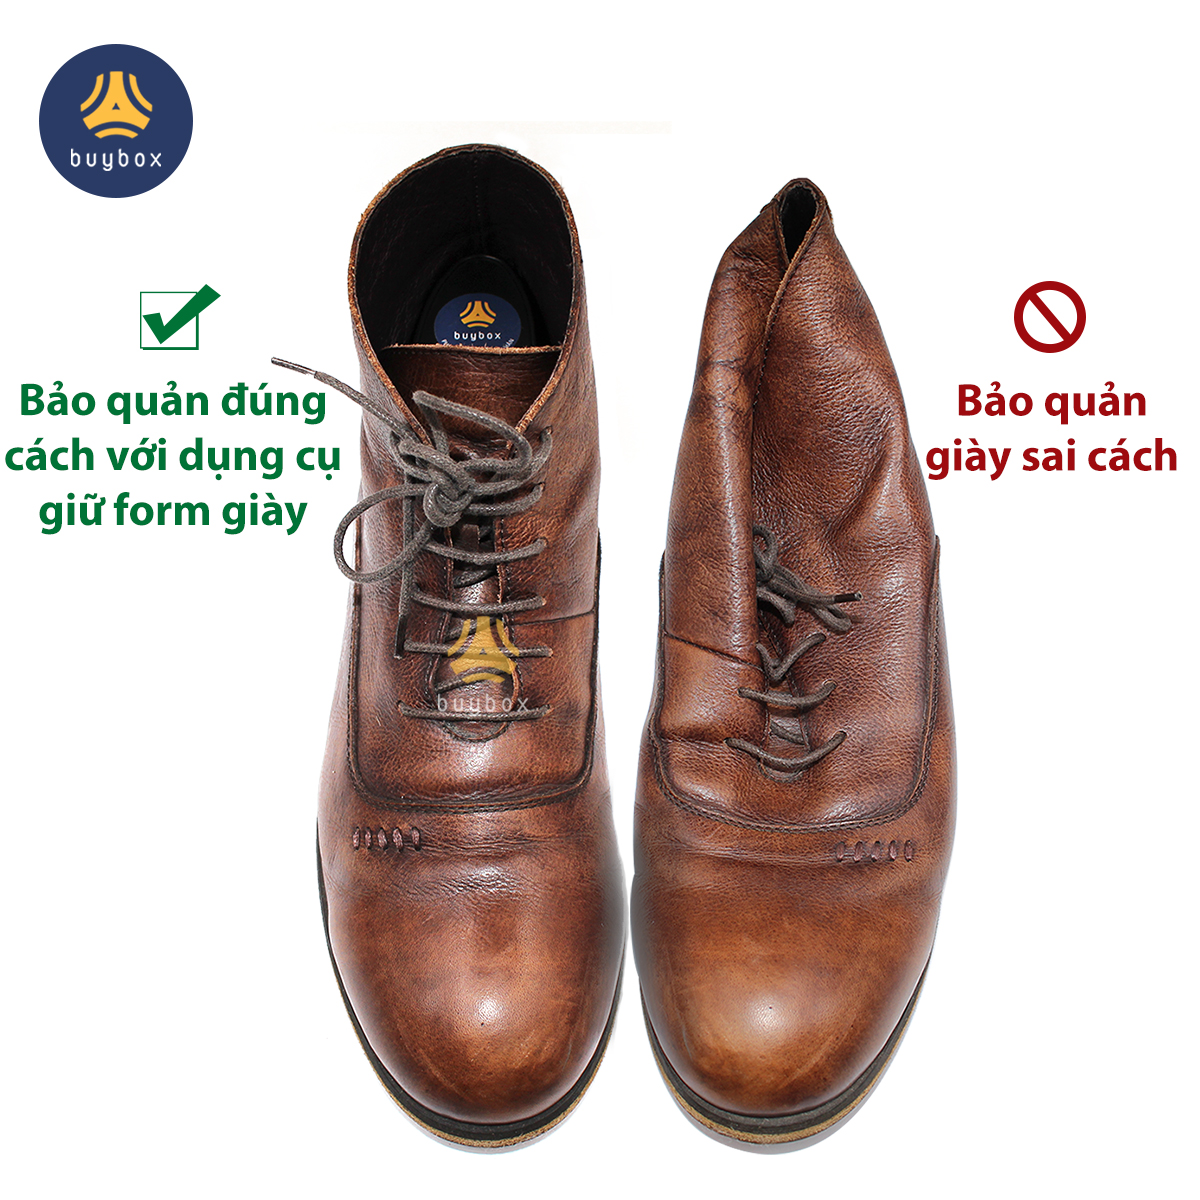 chăm sóc giày đúng cách với dụng cụ bảo quản giày chống xẹp móp mũi giày, chống gãy da giày và giúp giữ dáng giày chuẩn thiết kế - buybox - PKBB45